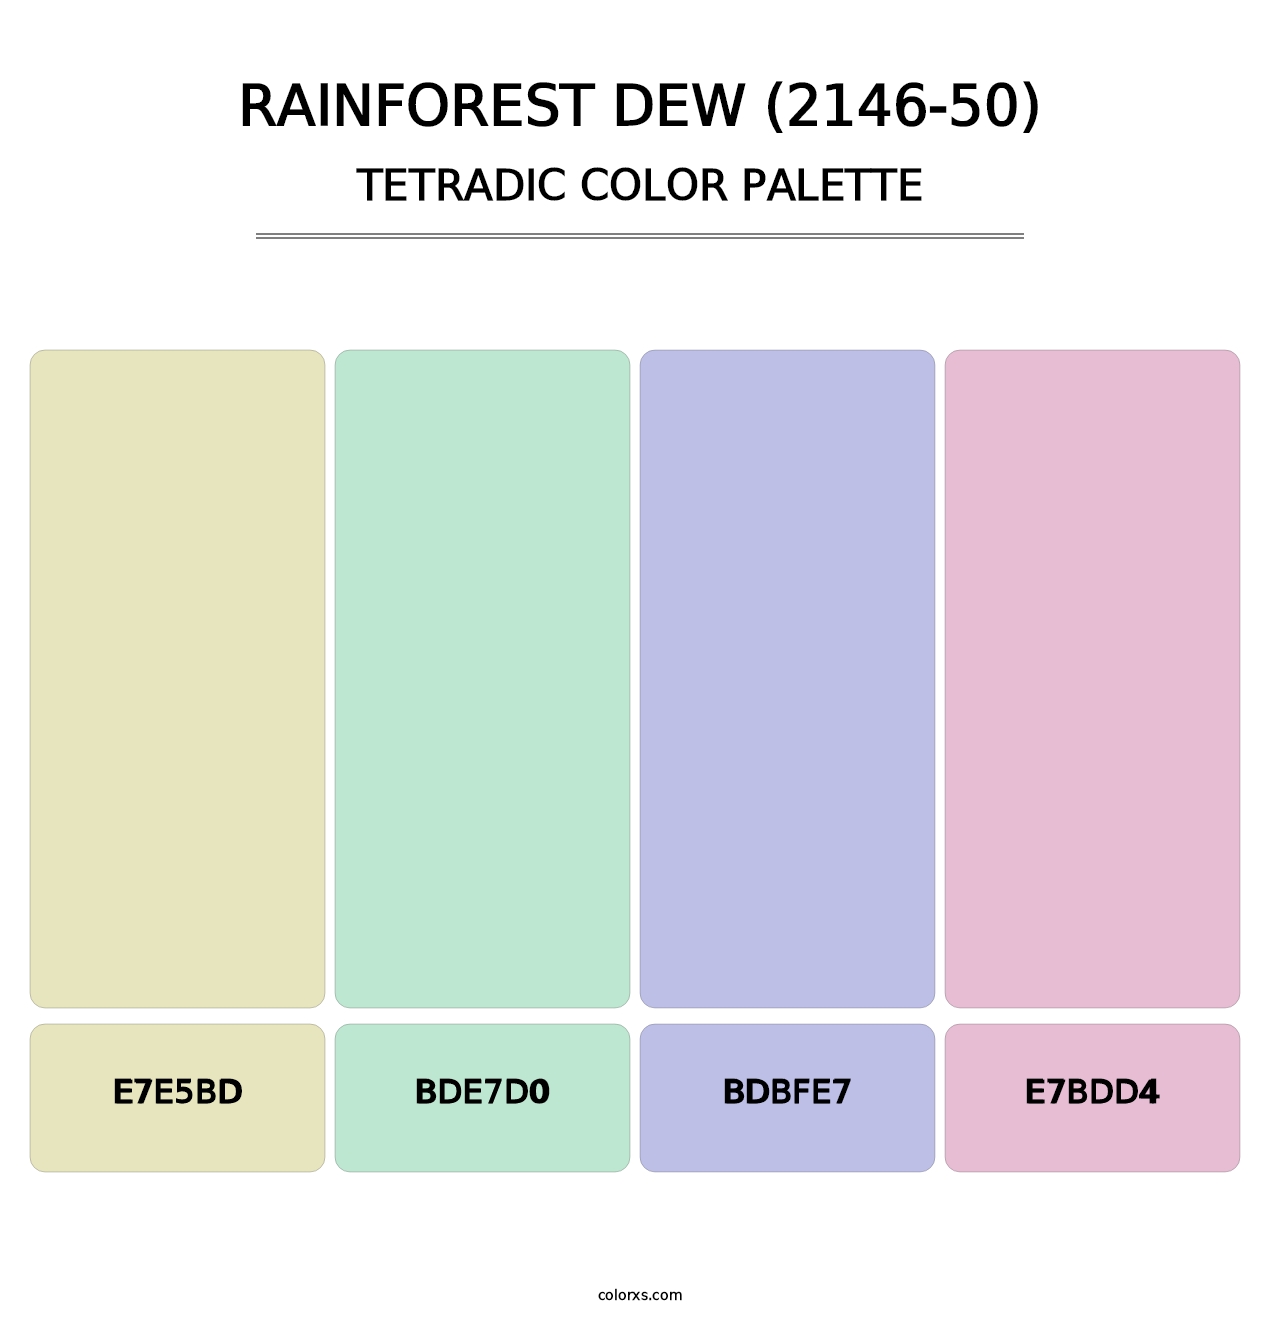 Rainforest Dew (2146-50) - Tetradic Color Palette